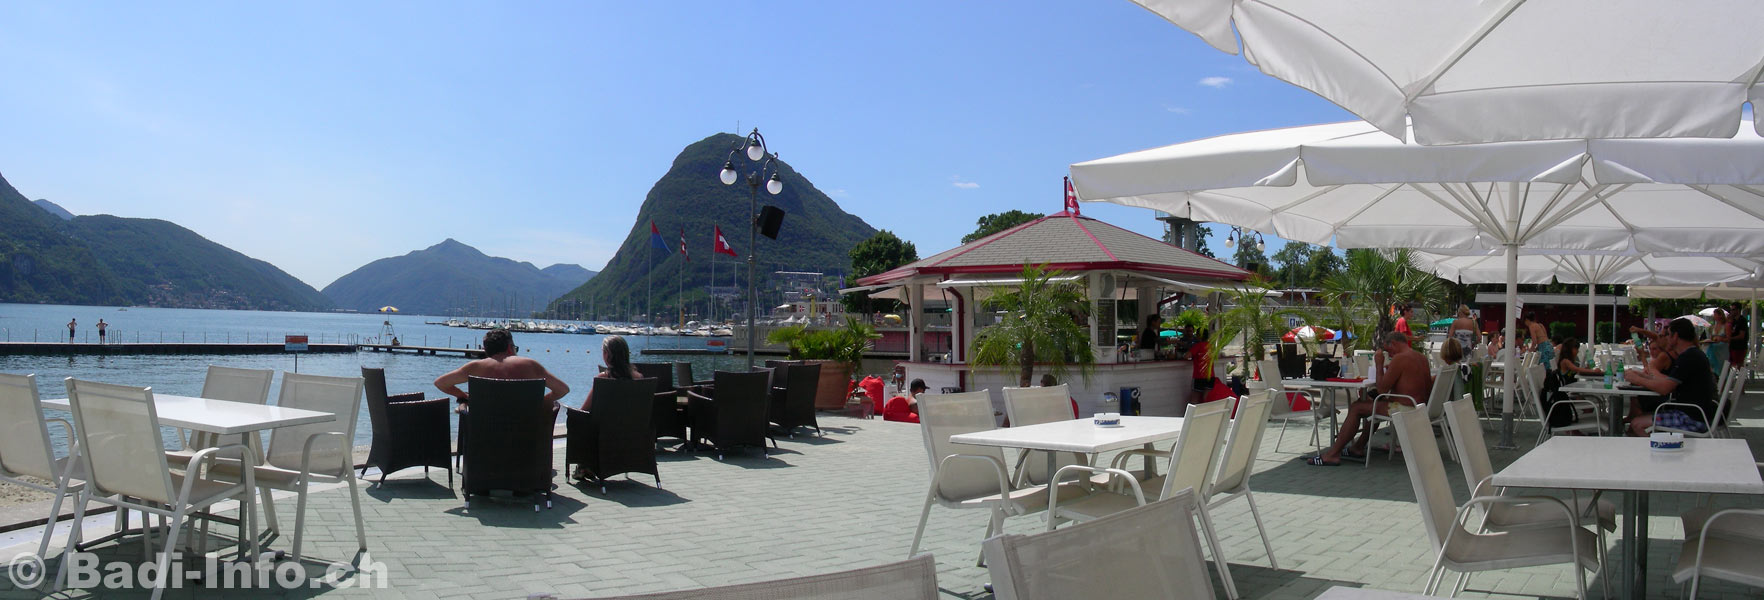 Beach Lounge al Lido Lugano Svizzera